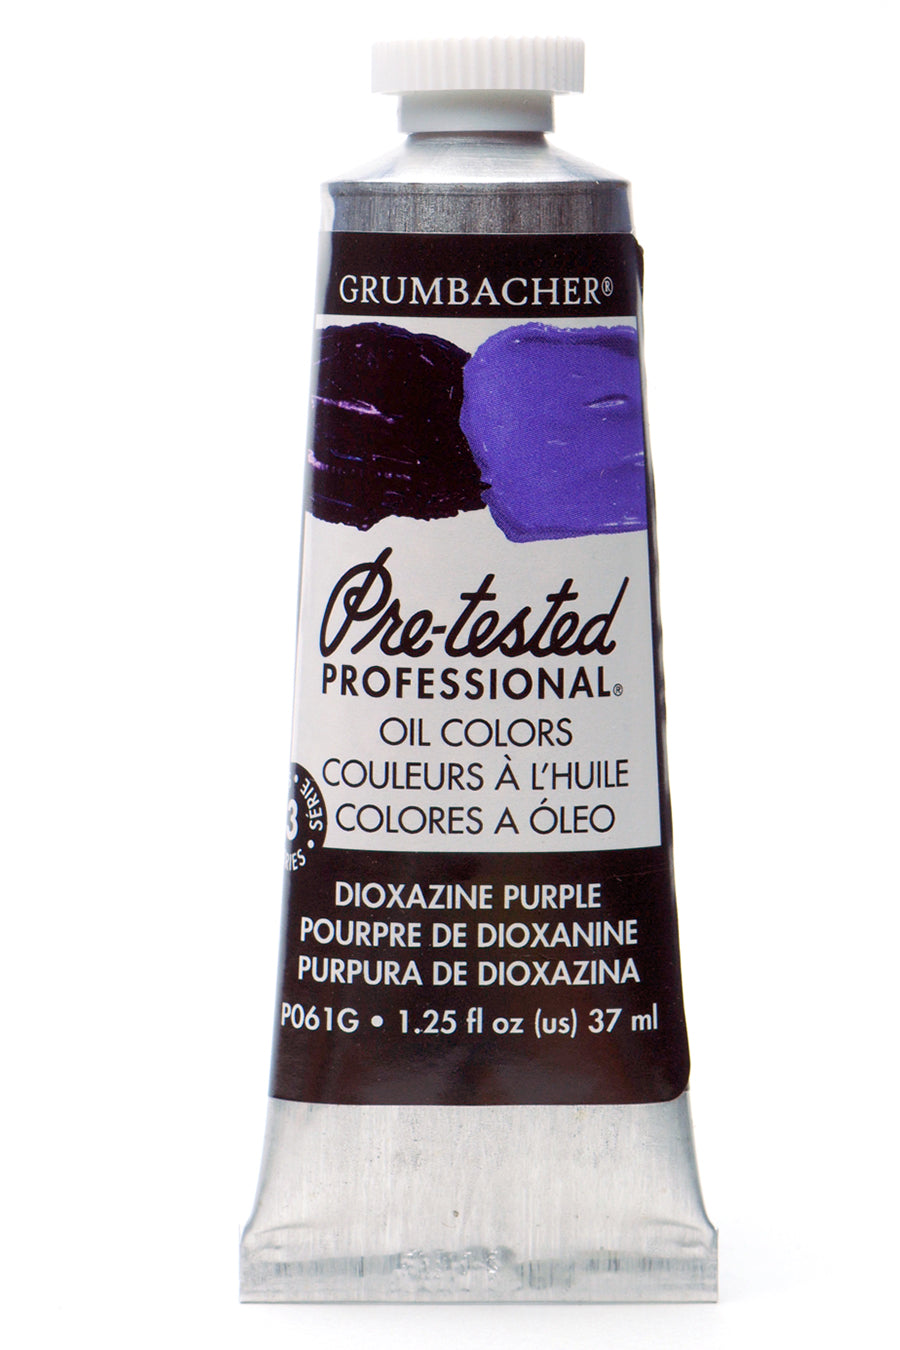 Pre-testedU+00AE Oil Ultramarine Violet 37 ml.